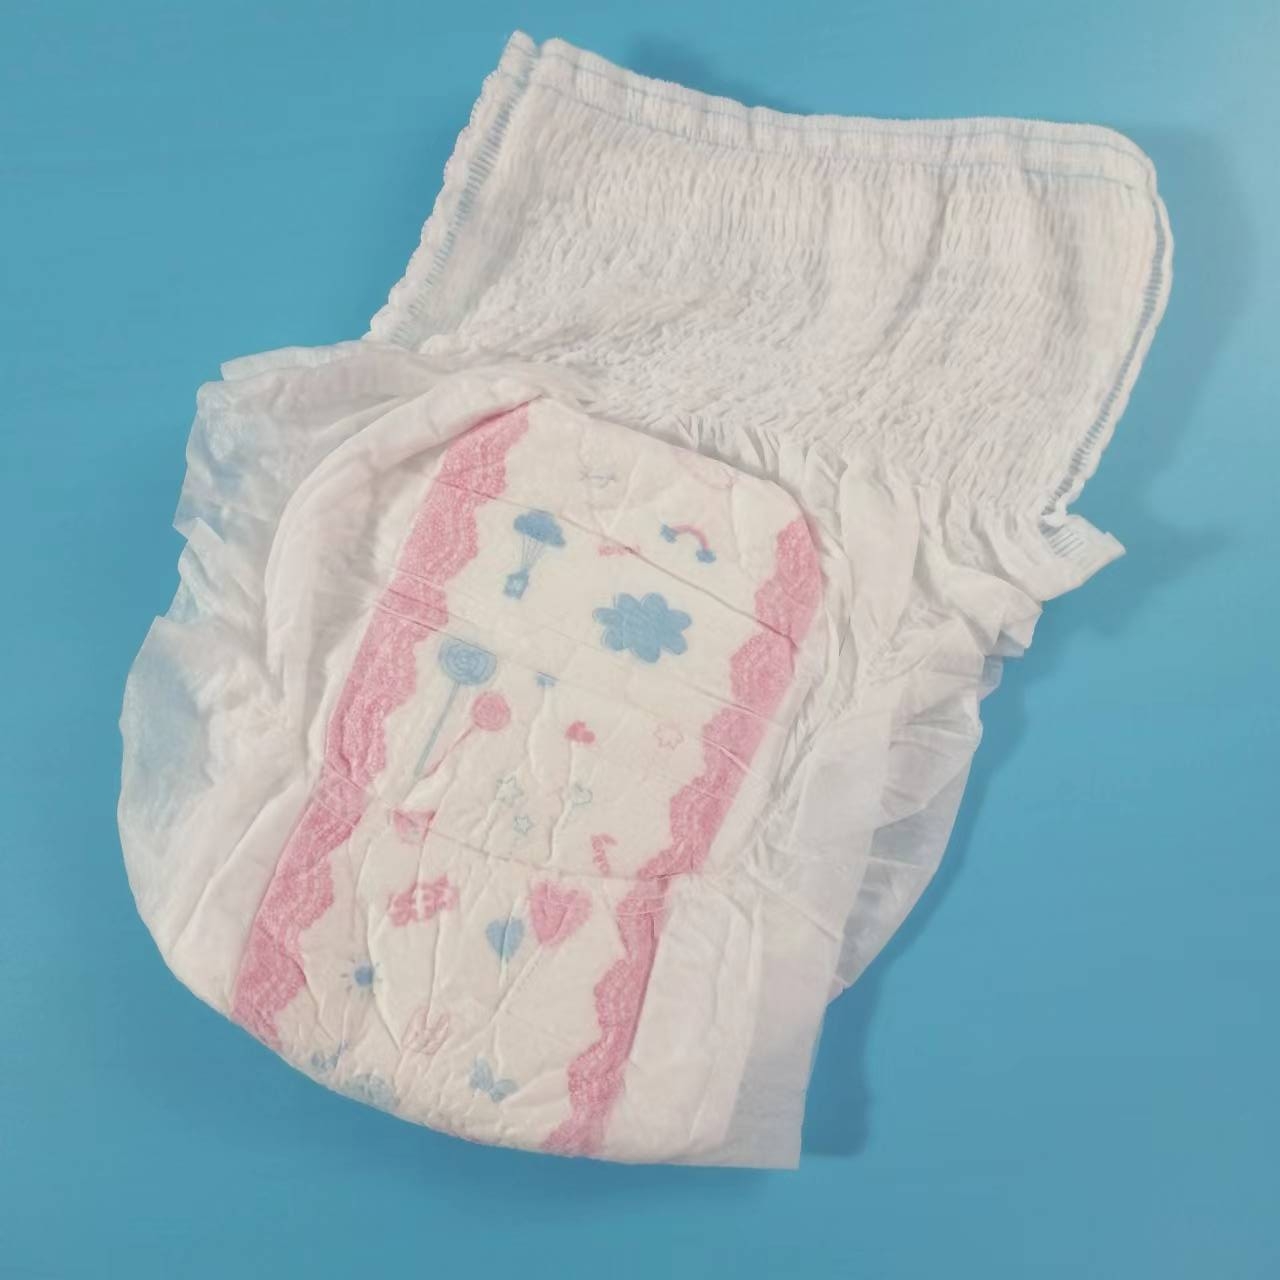 Calças sanitárias de alta qualidade, tipo despreocupado, super conforto, algodão puro, calças menstruais femininas, novo uso da mãe